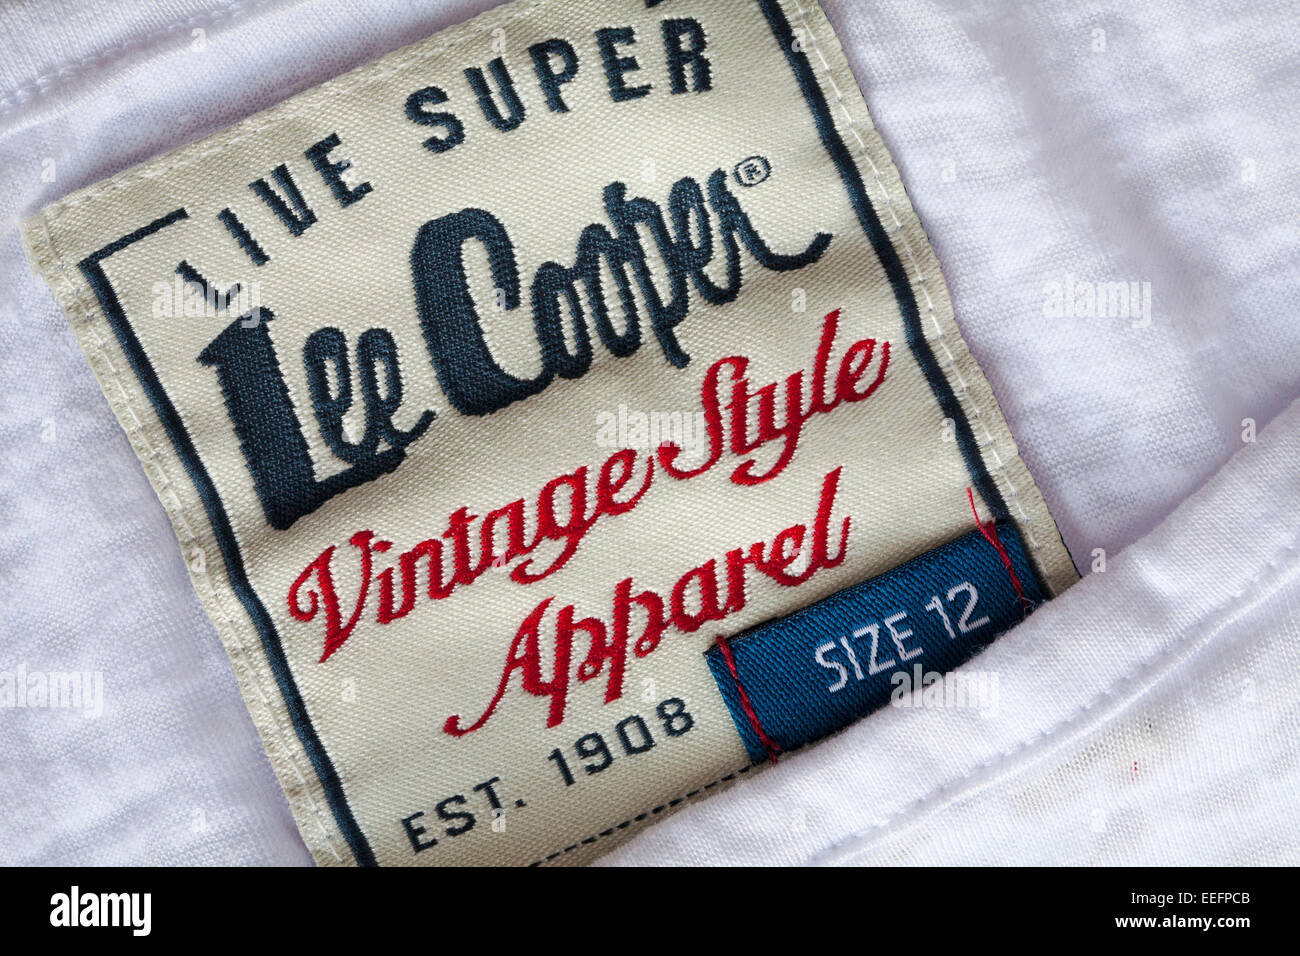 vintage lee cooper jeans